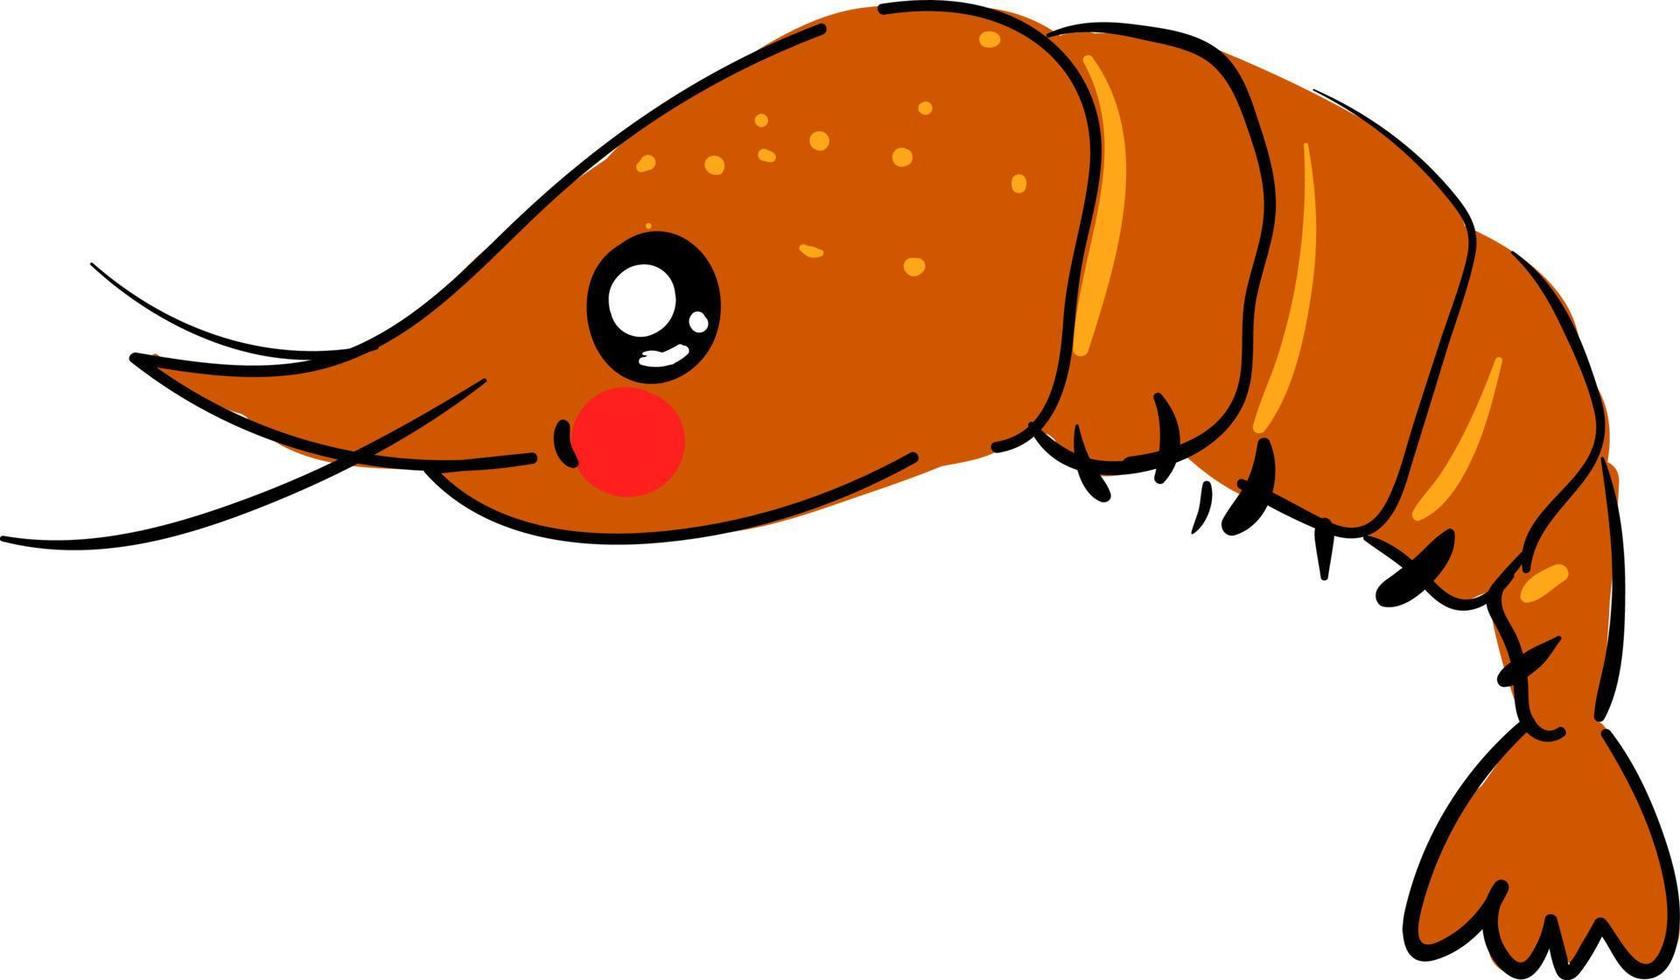 Cute shrimp, illustration, vector on white background.